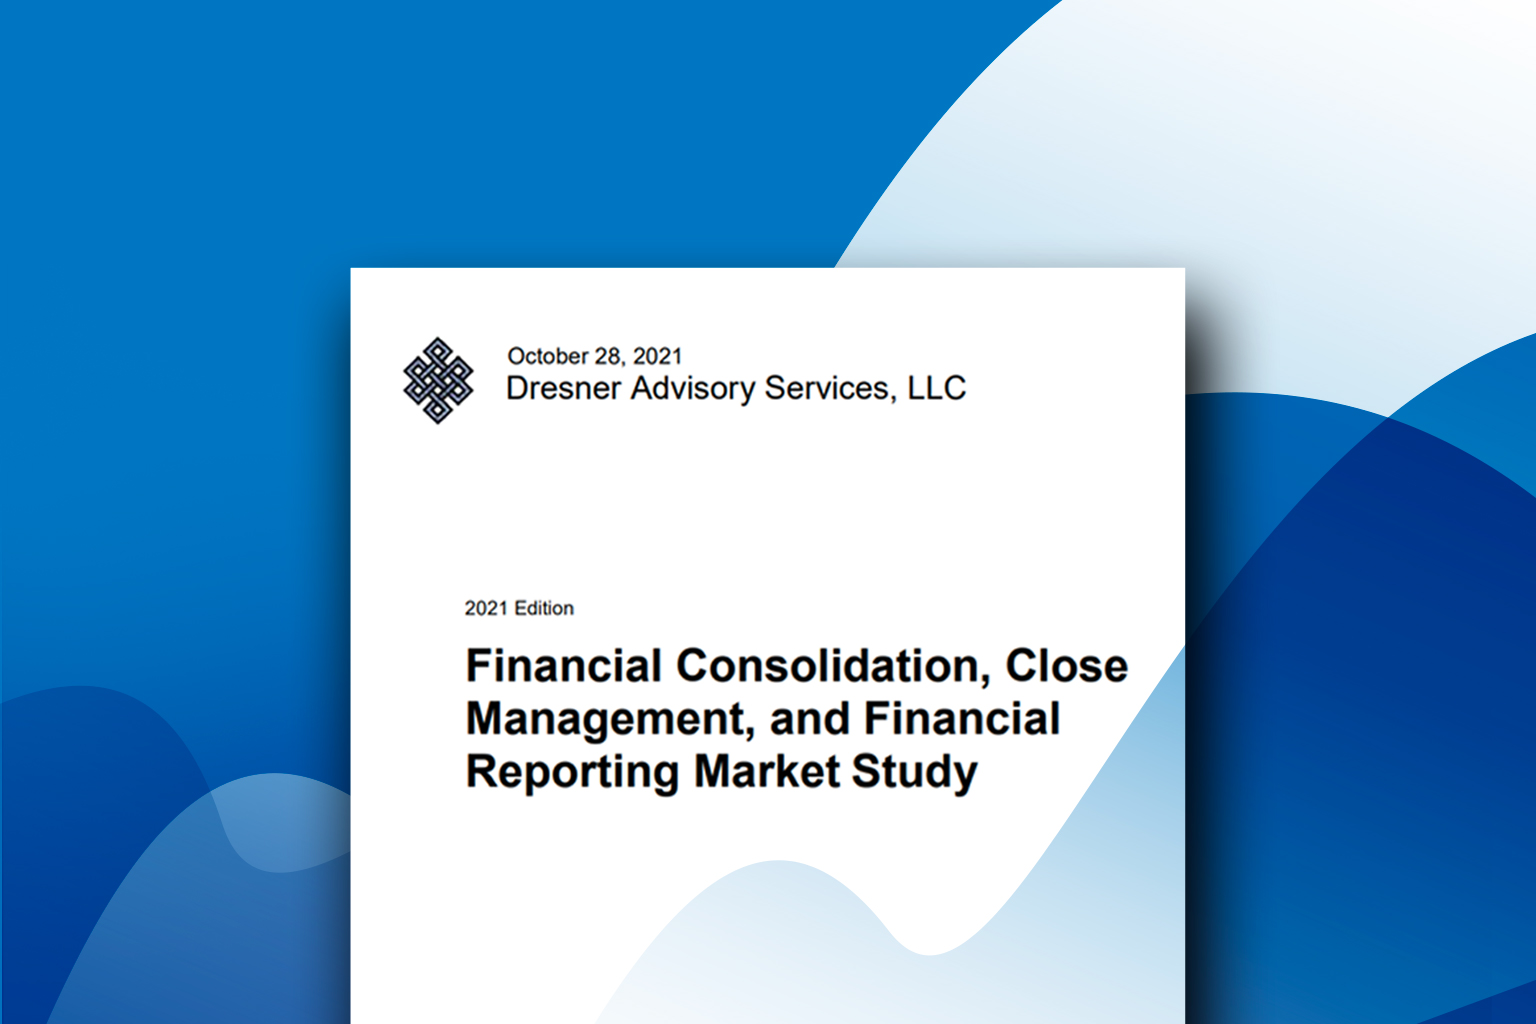 CCH® Tagetik en tête des éditeurs dans l'étude de marché de Dresner sur la consolidation financière, la clôture comptable et le reporting financier